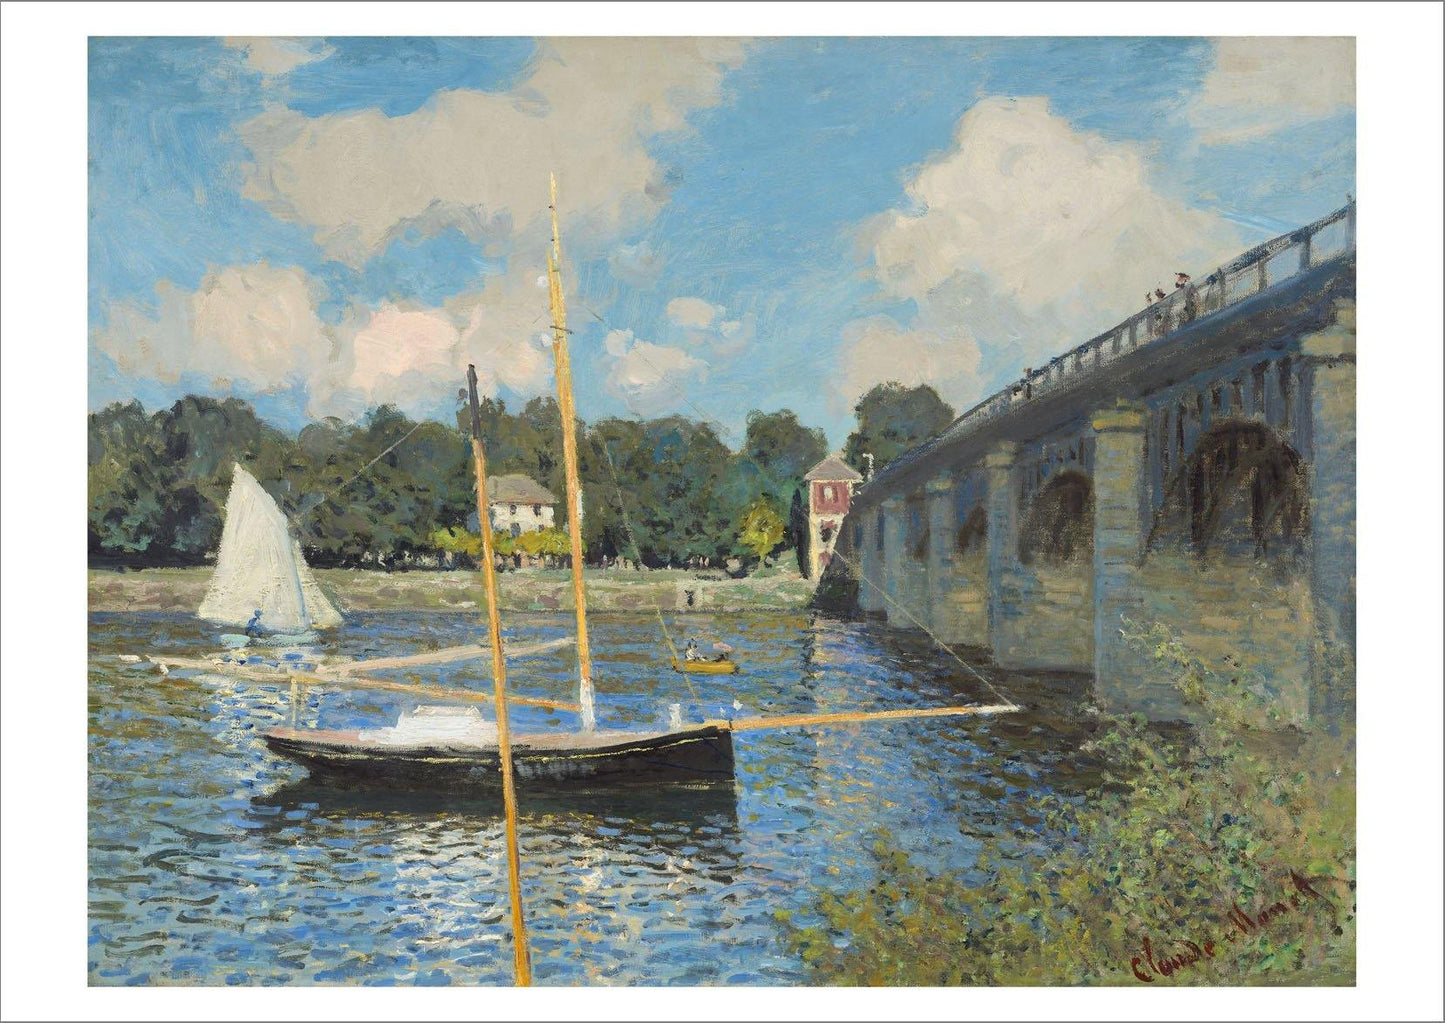 CLAUDE MONET: The Bridge at Argenteuil, Fine Art Print - Pimlico Prints